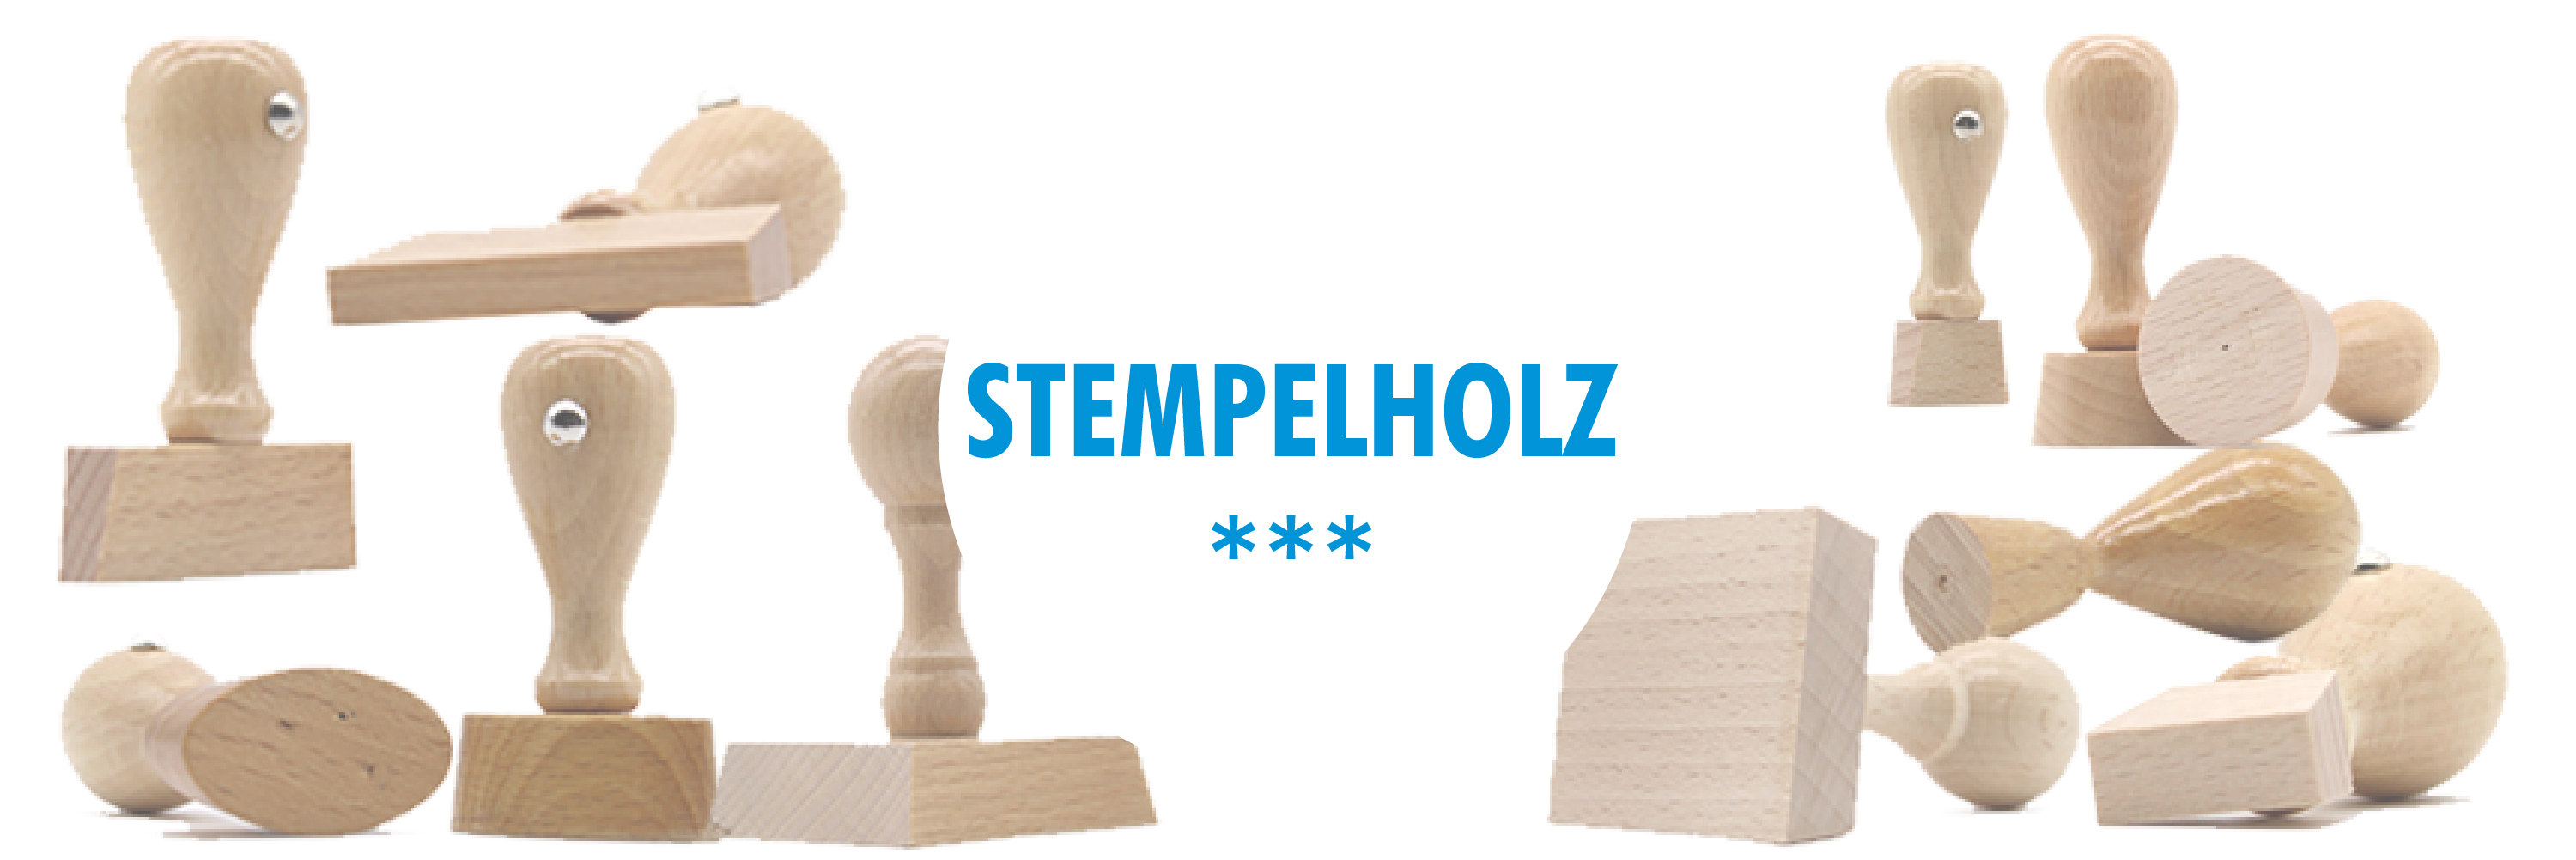 Stempelholz DIY